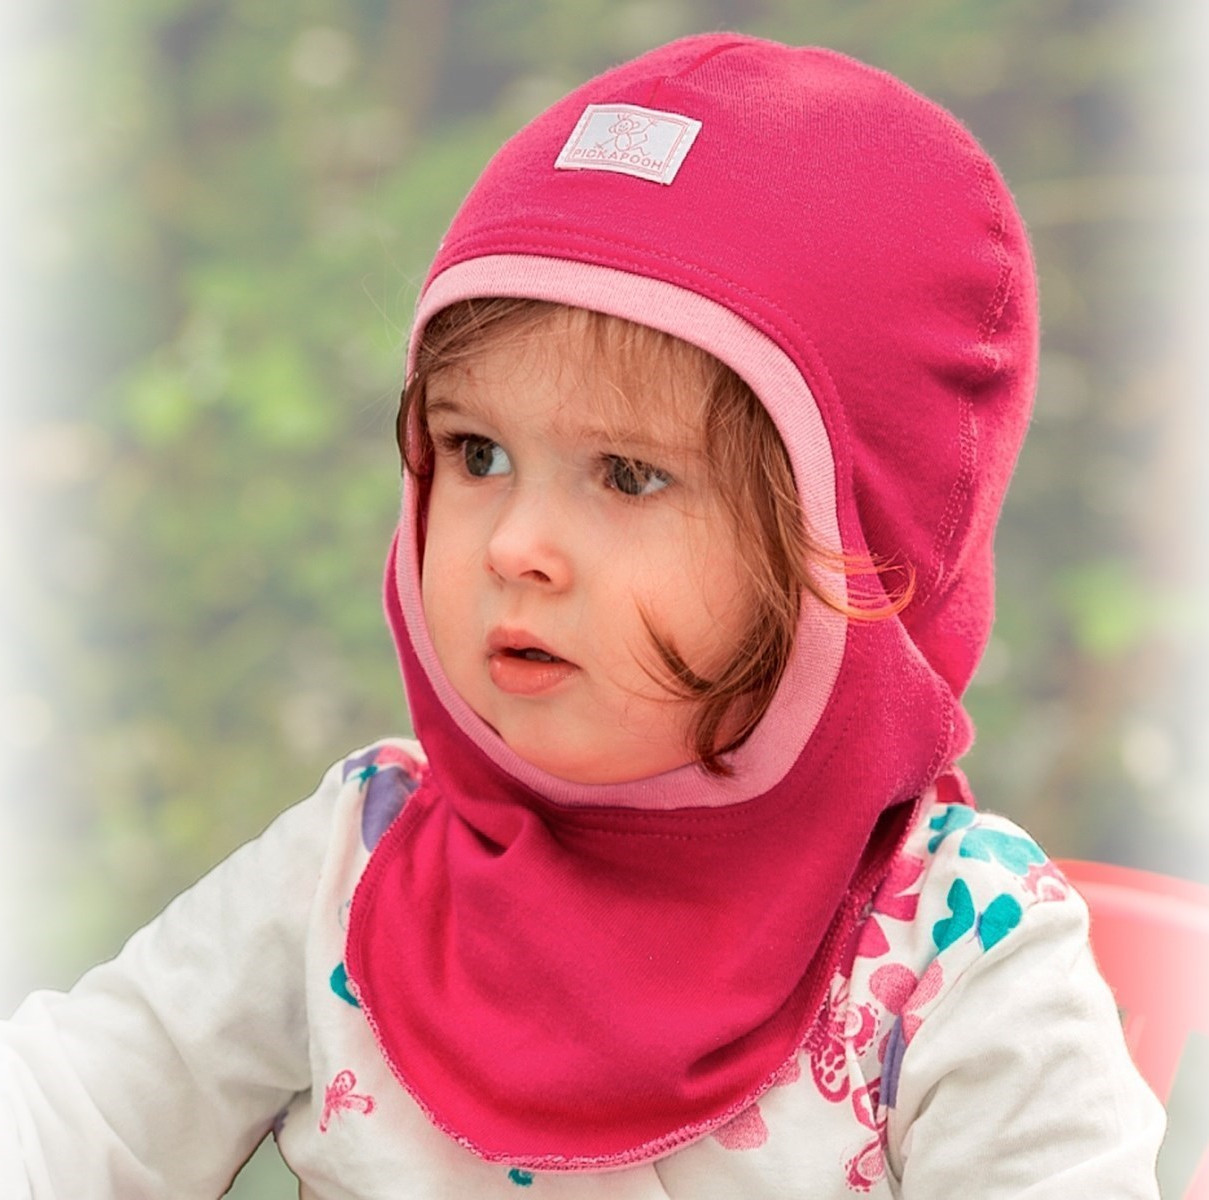 Passamontagna e cappelli per proteggersi dal freddo! - Vestire biologico,  Articoli biologici ed ecologici